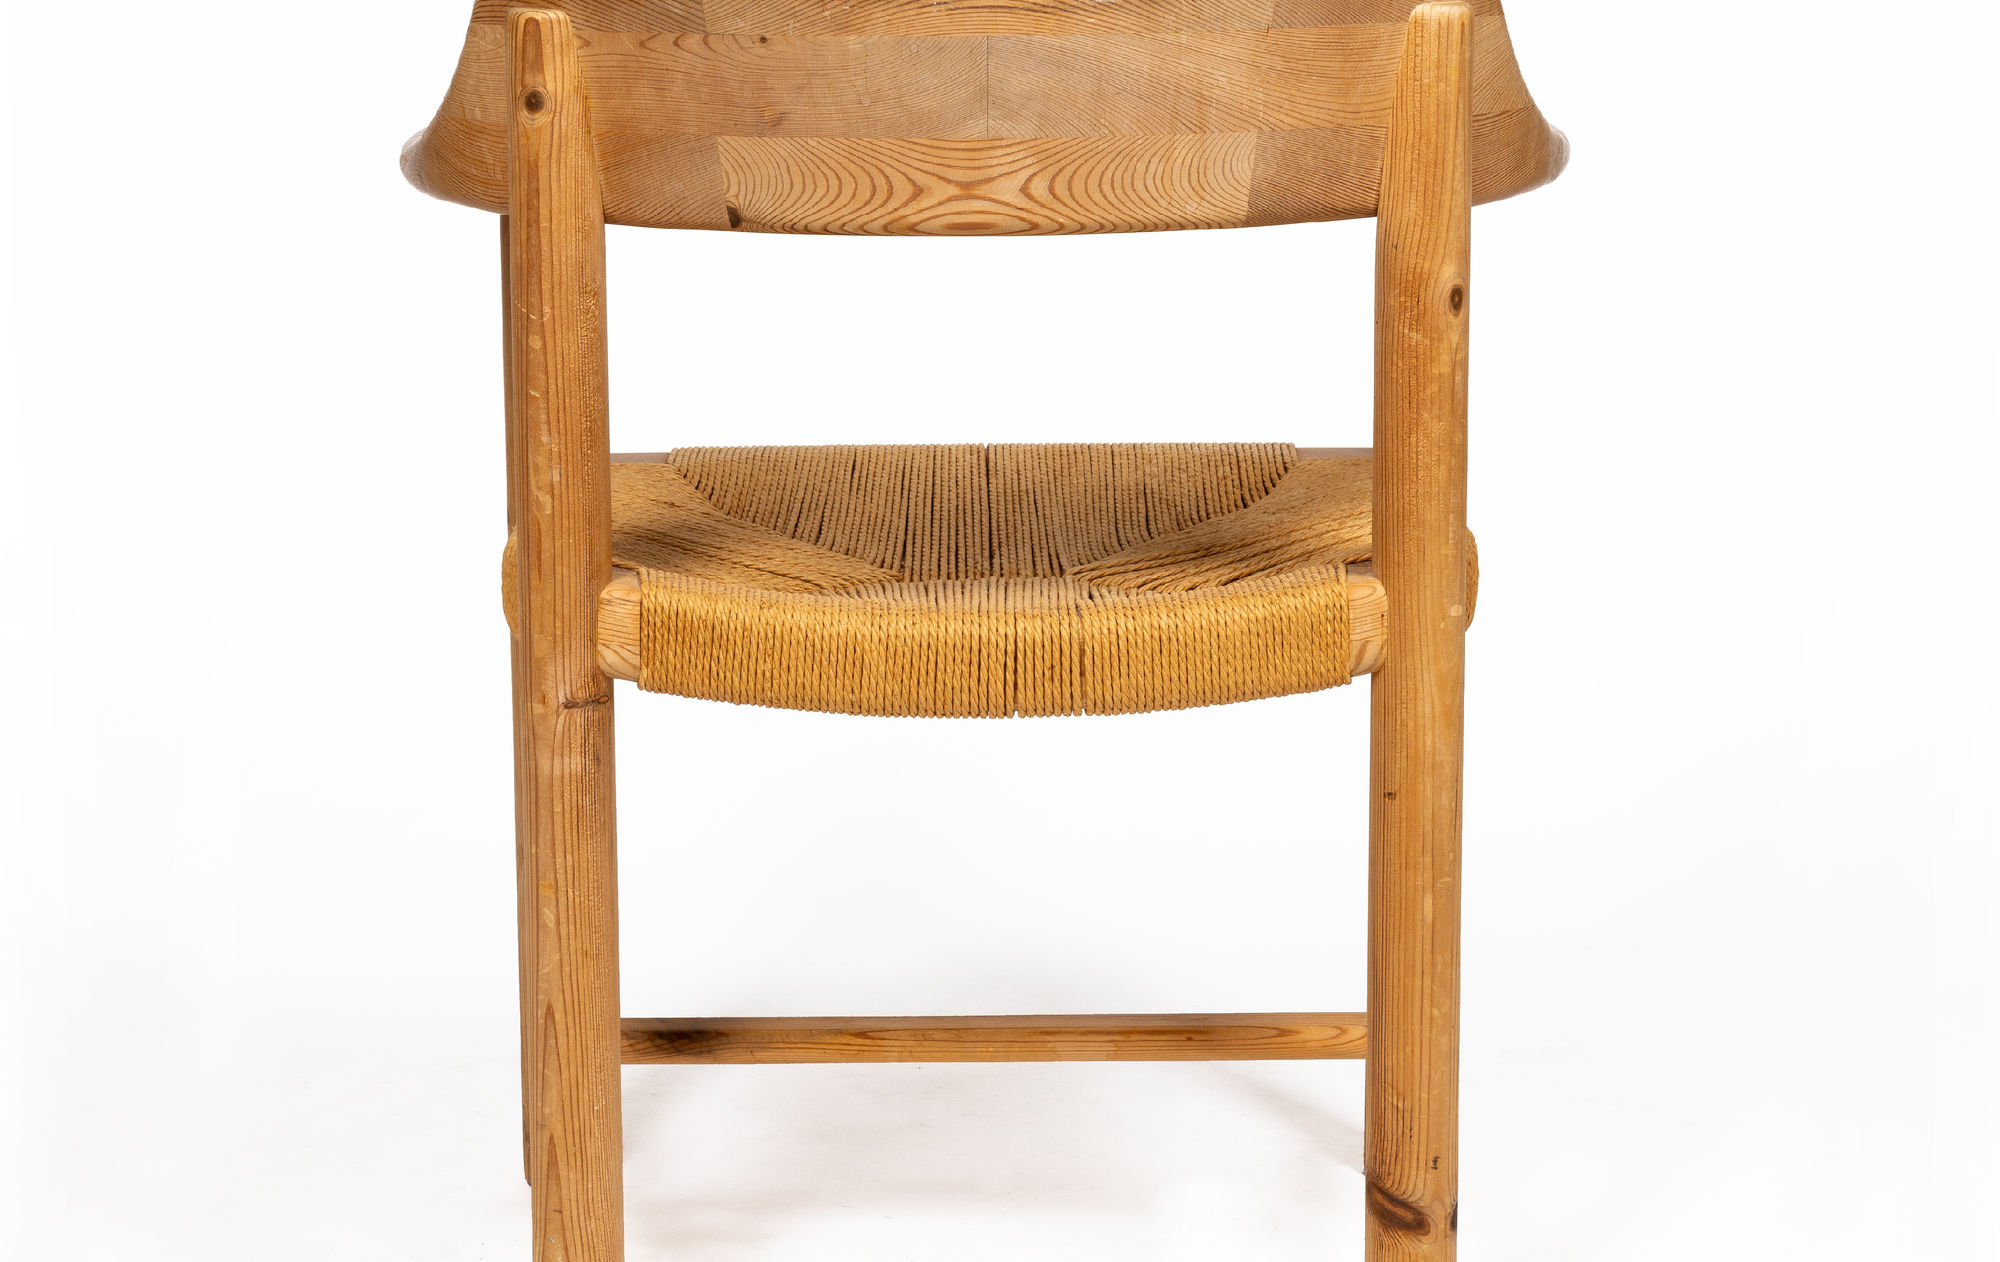 Fir tree chair by Rainer Daumiller